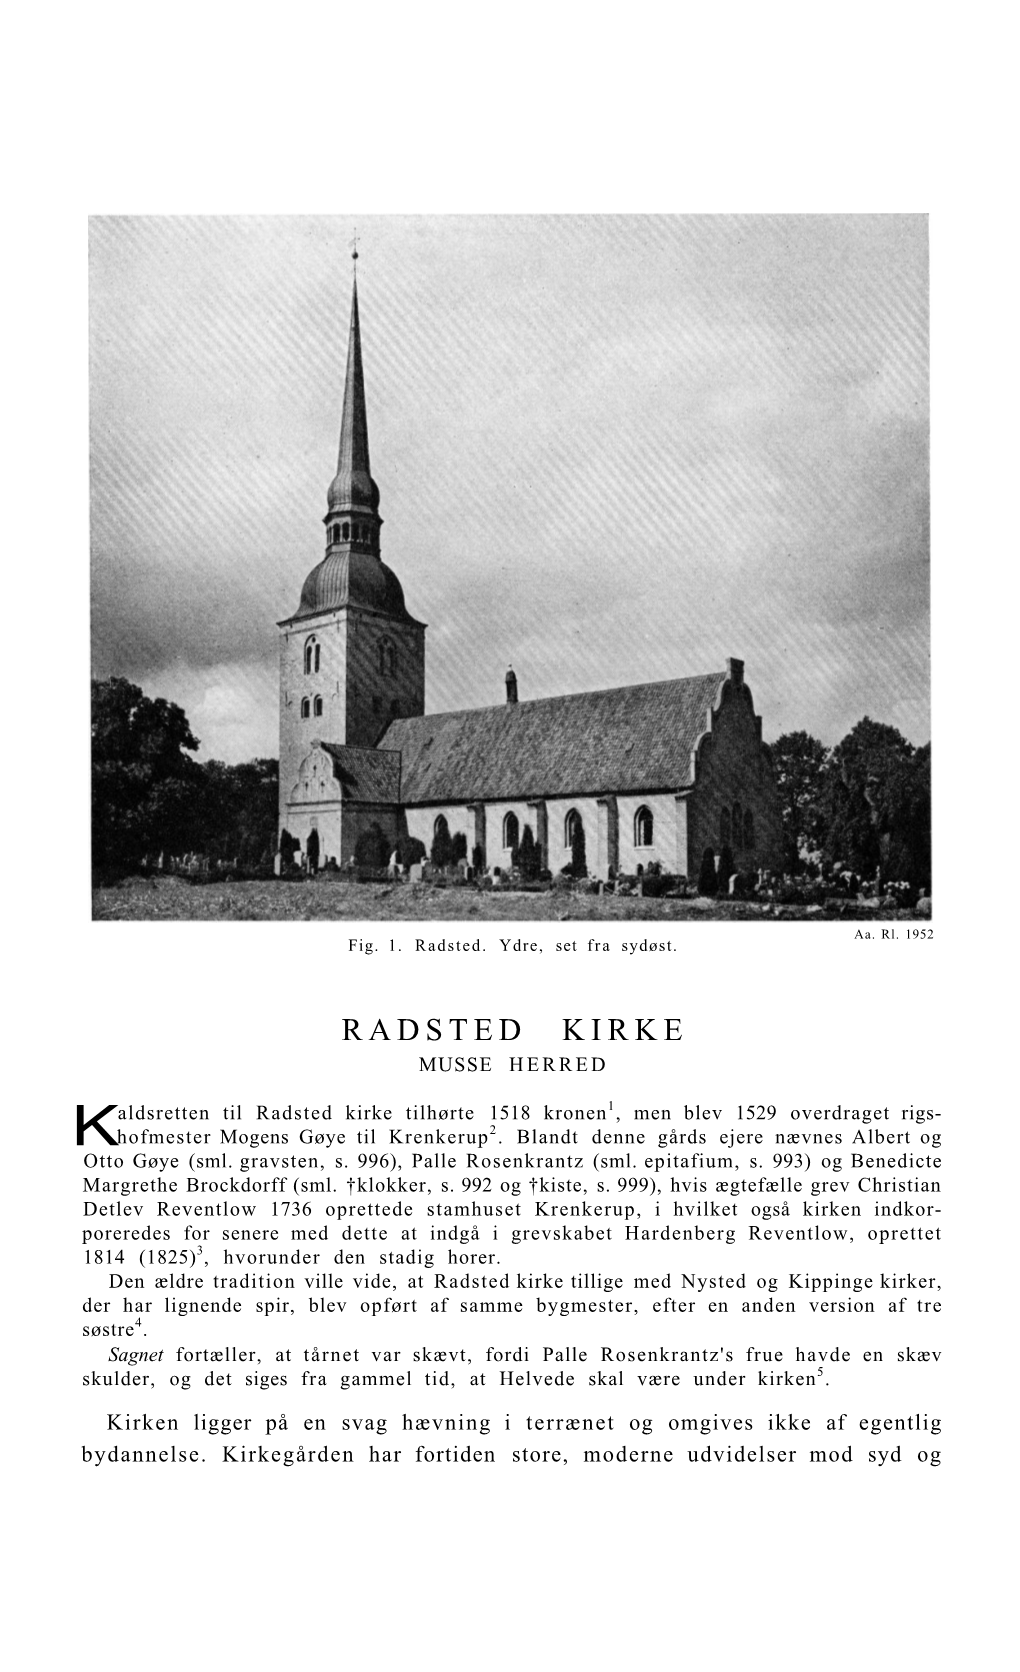 Radsted Kirke Musse Herred